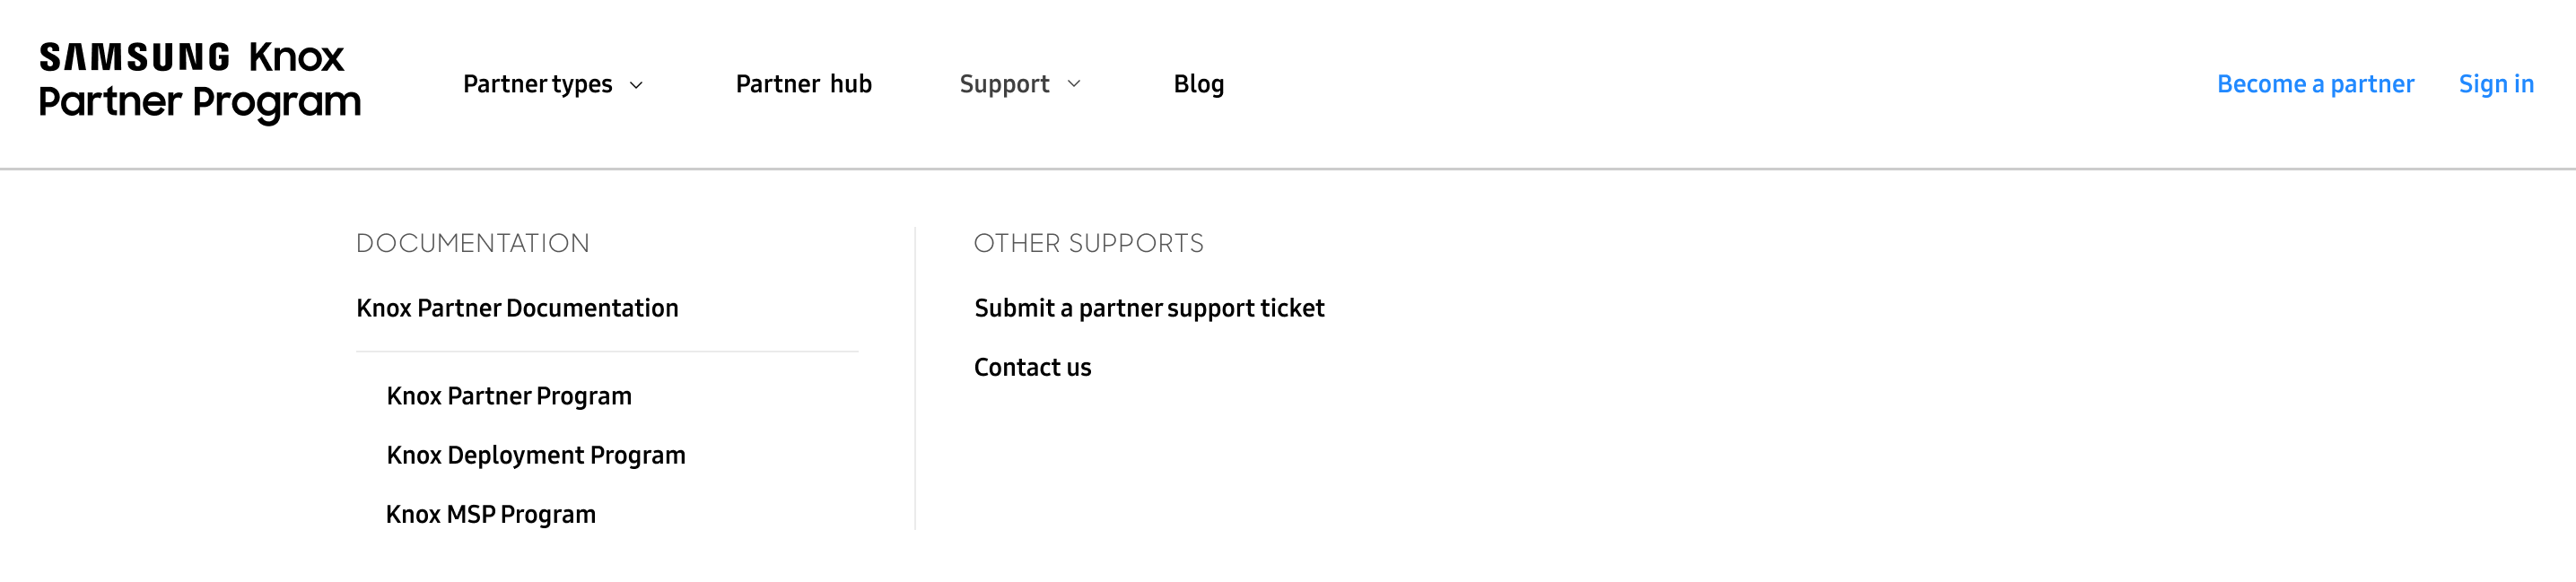 Knox Partner Program website header.